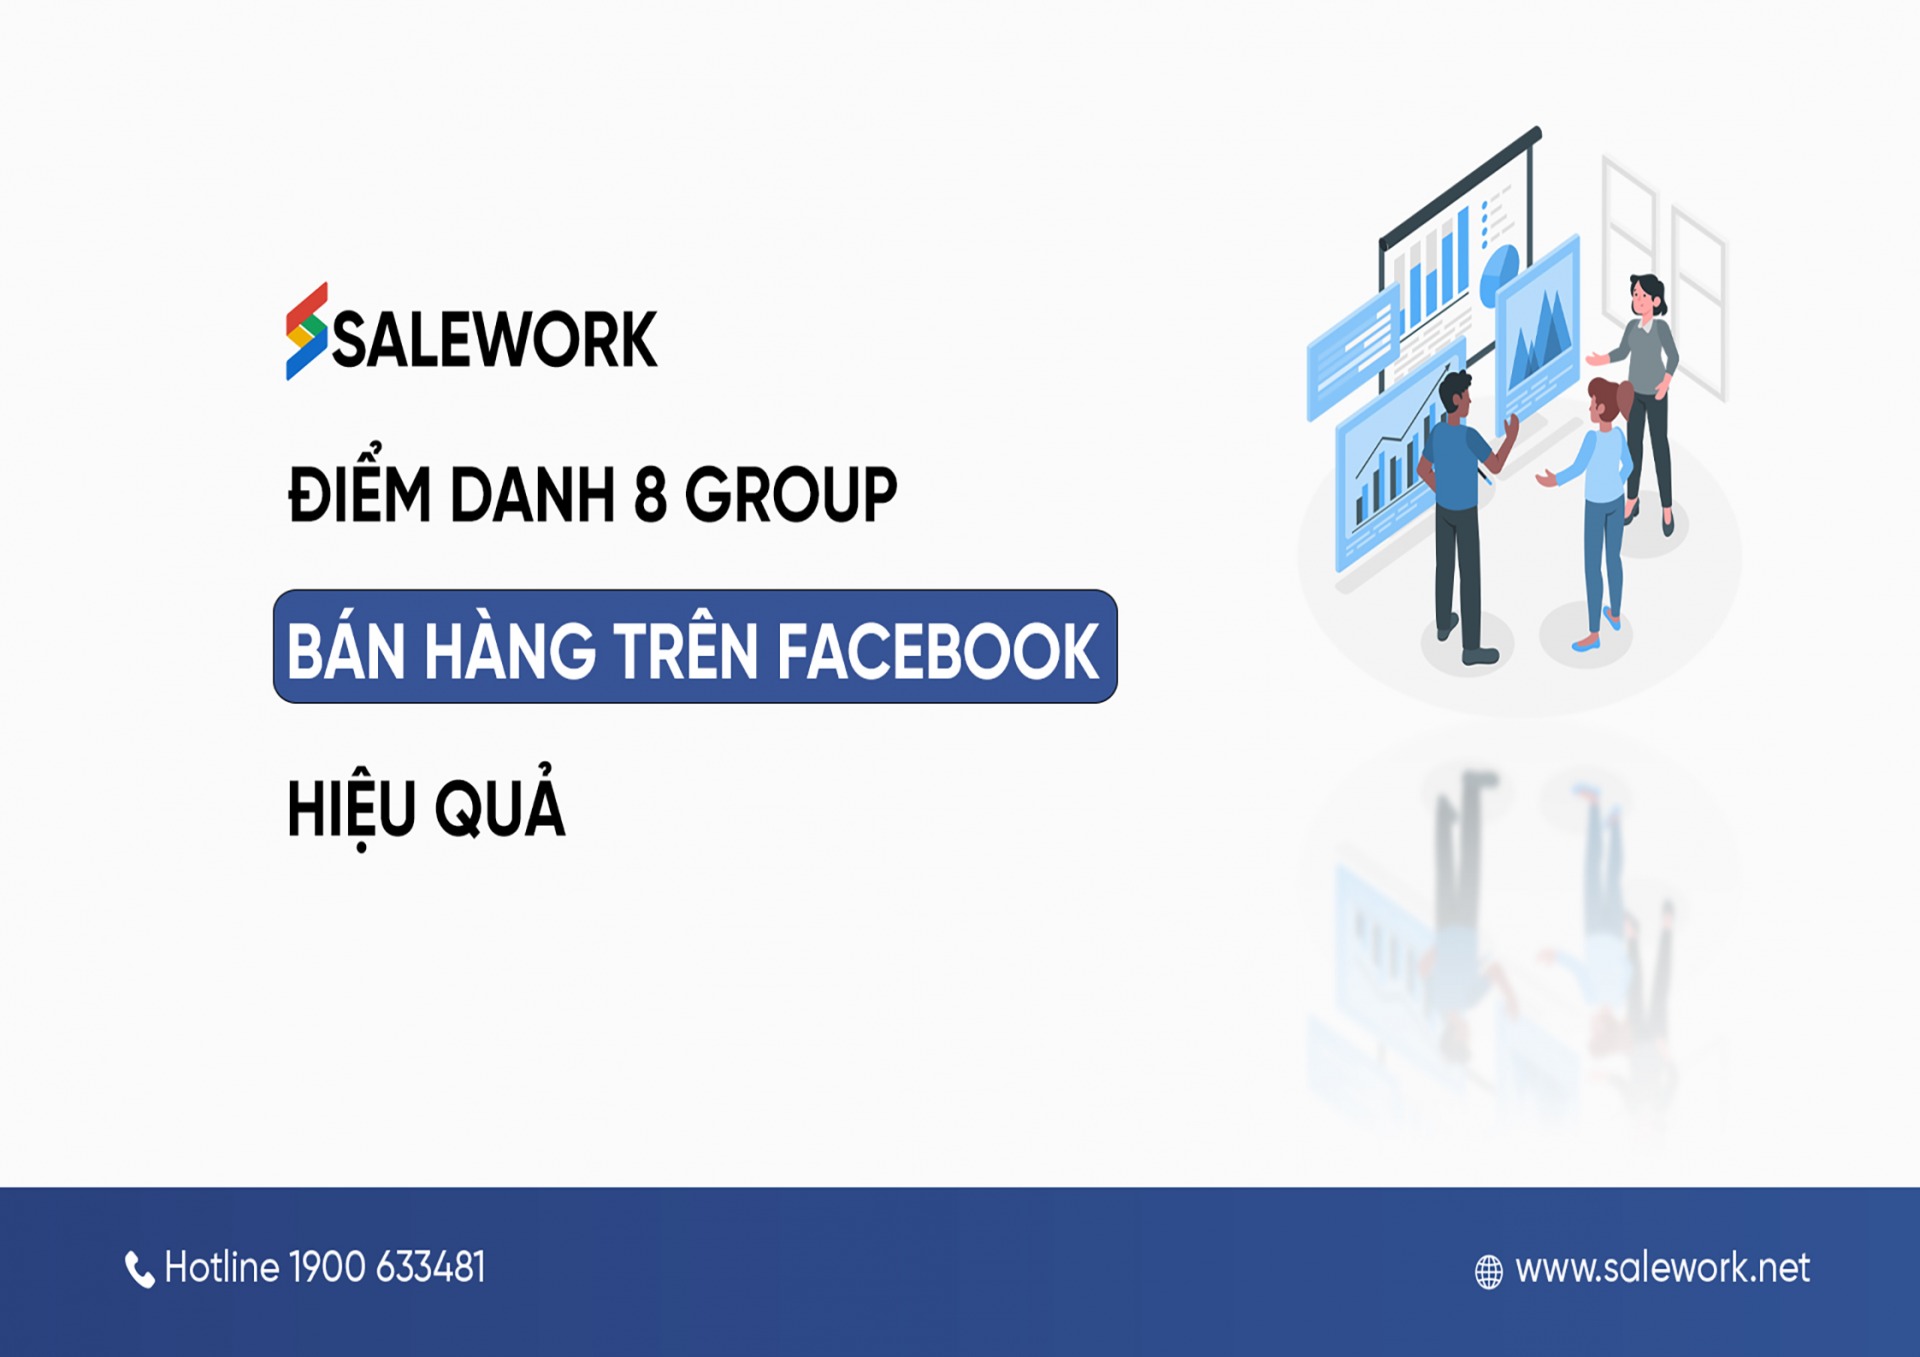 Điểm danh 8 group bán hàng trên Facebook hiệu quả - Salework